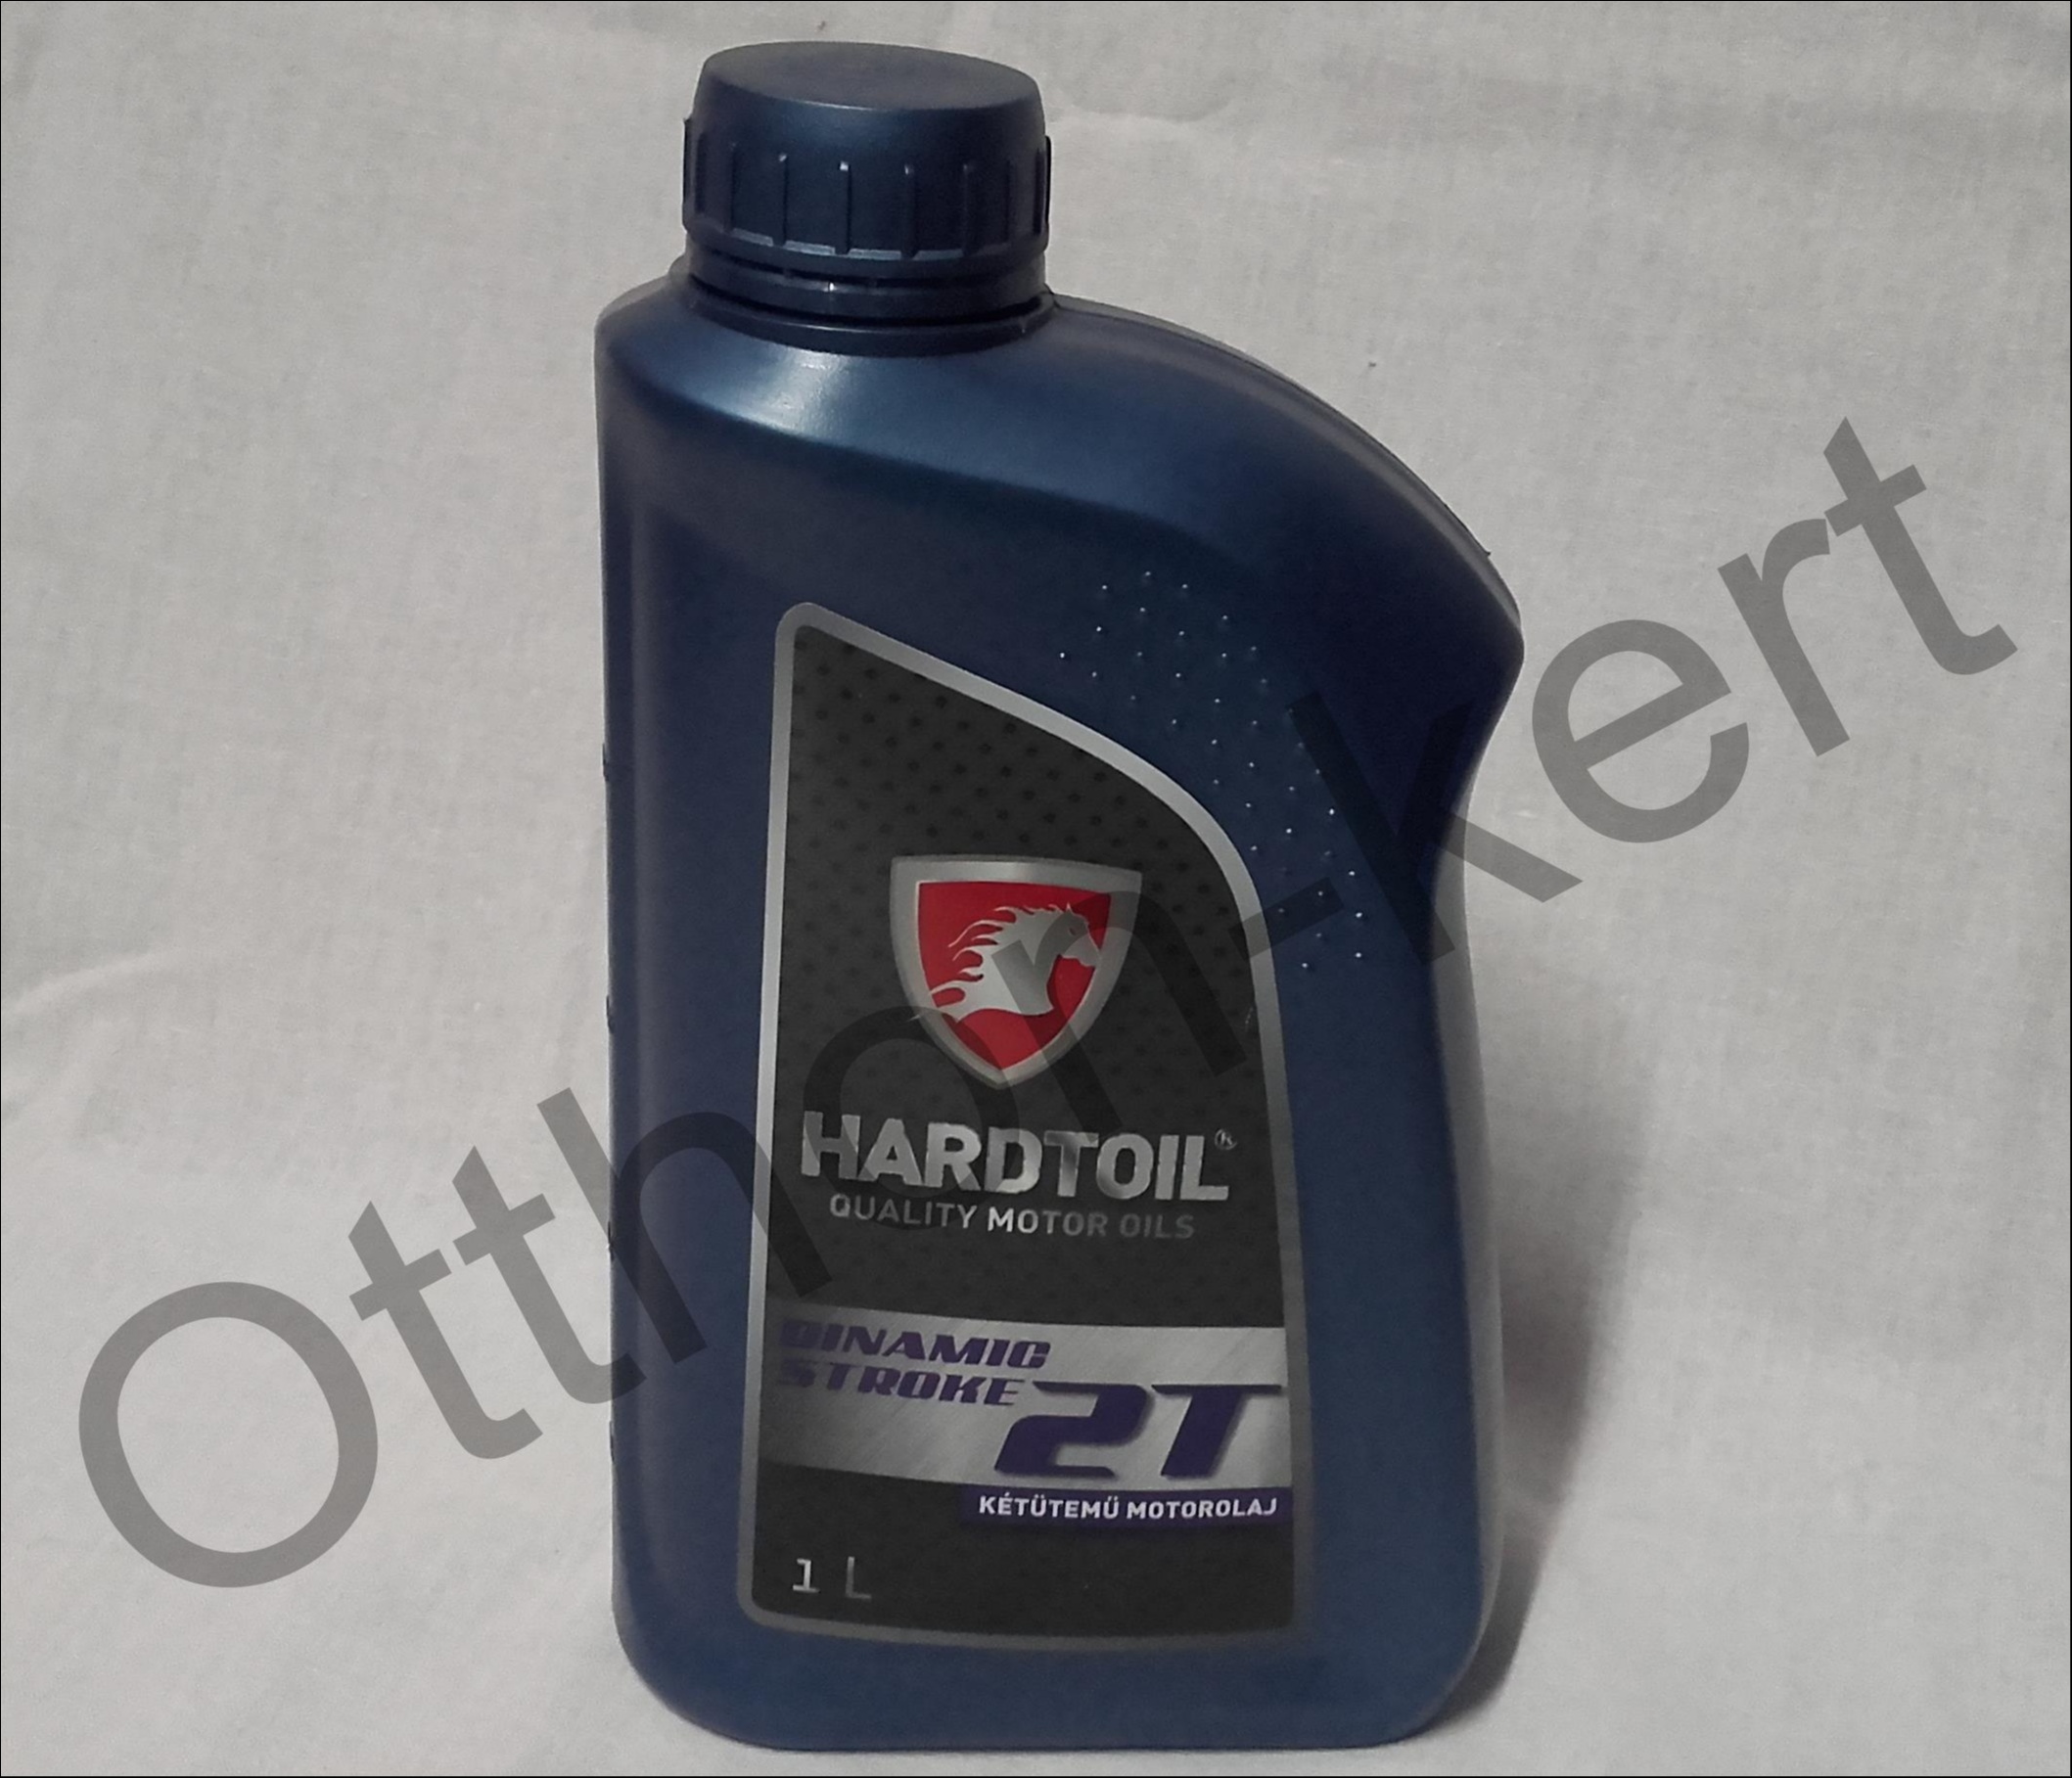 Hardt Oil Dynamicstroke 2T 1L